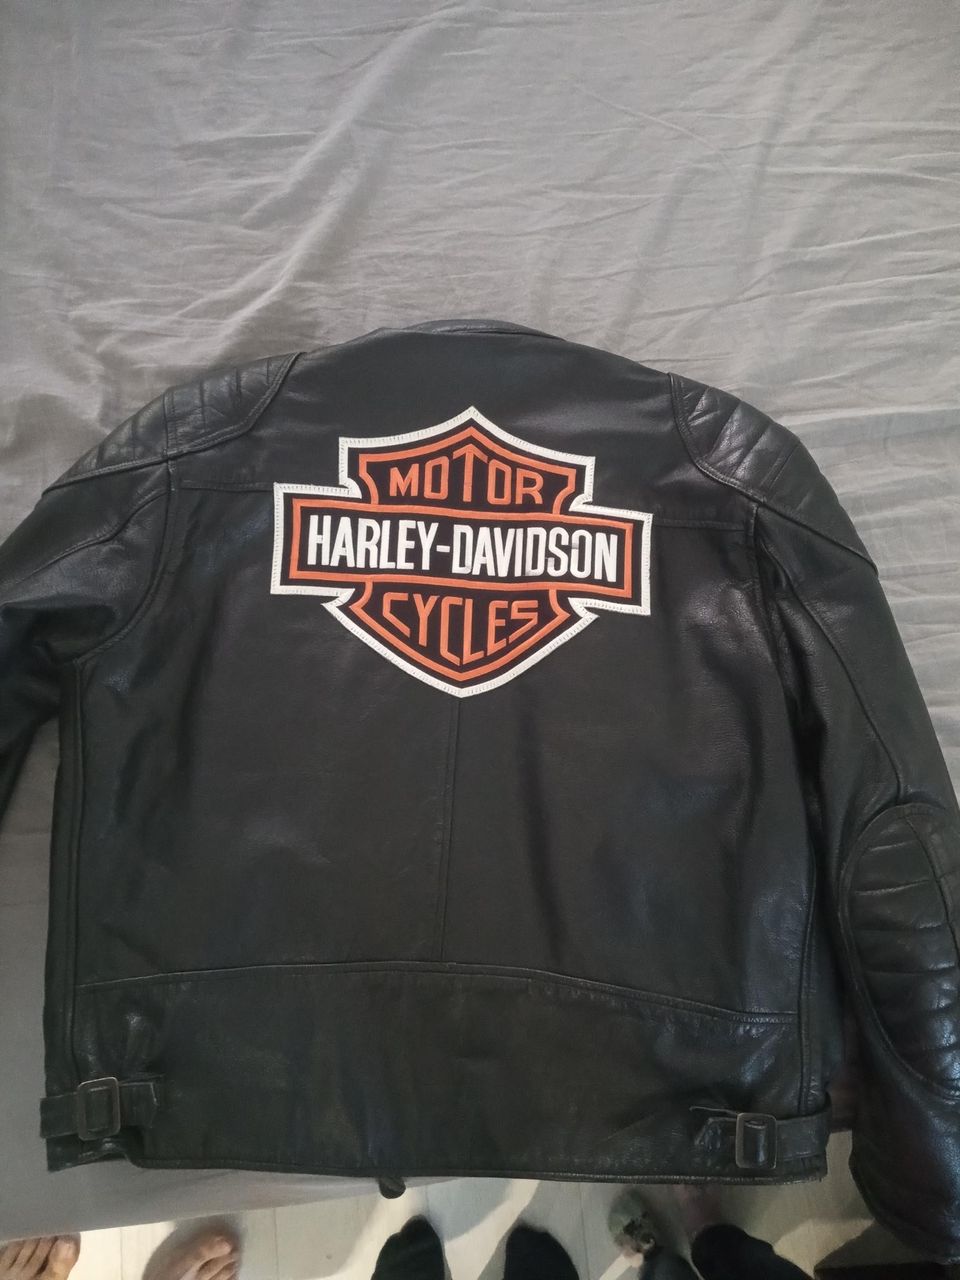 Harley Davidson tyylinen Custome takki